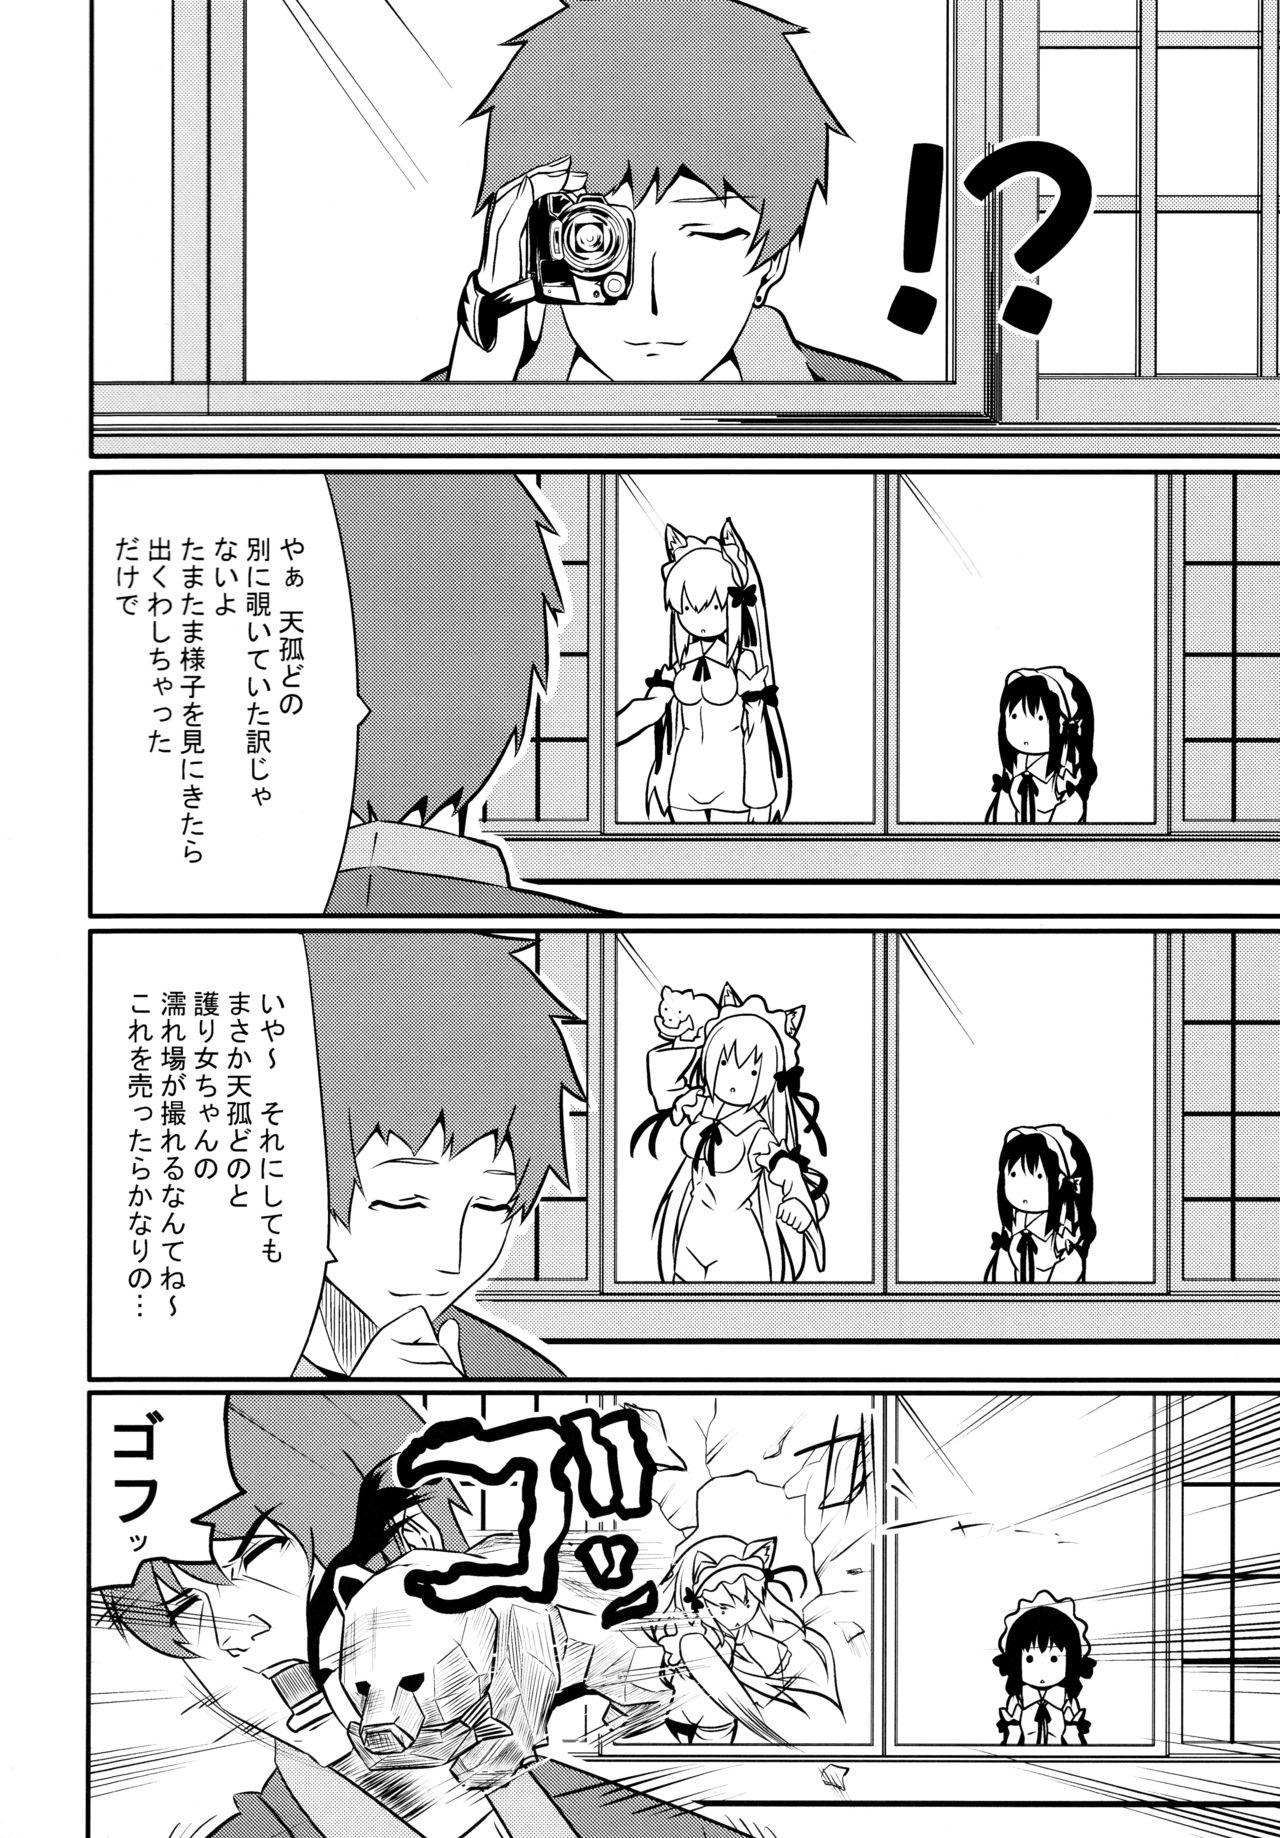 Machine Hare, Tokidoki Oinari-sama 4 - Wagaya no oinari sama Fudendo - Page 28